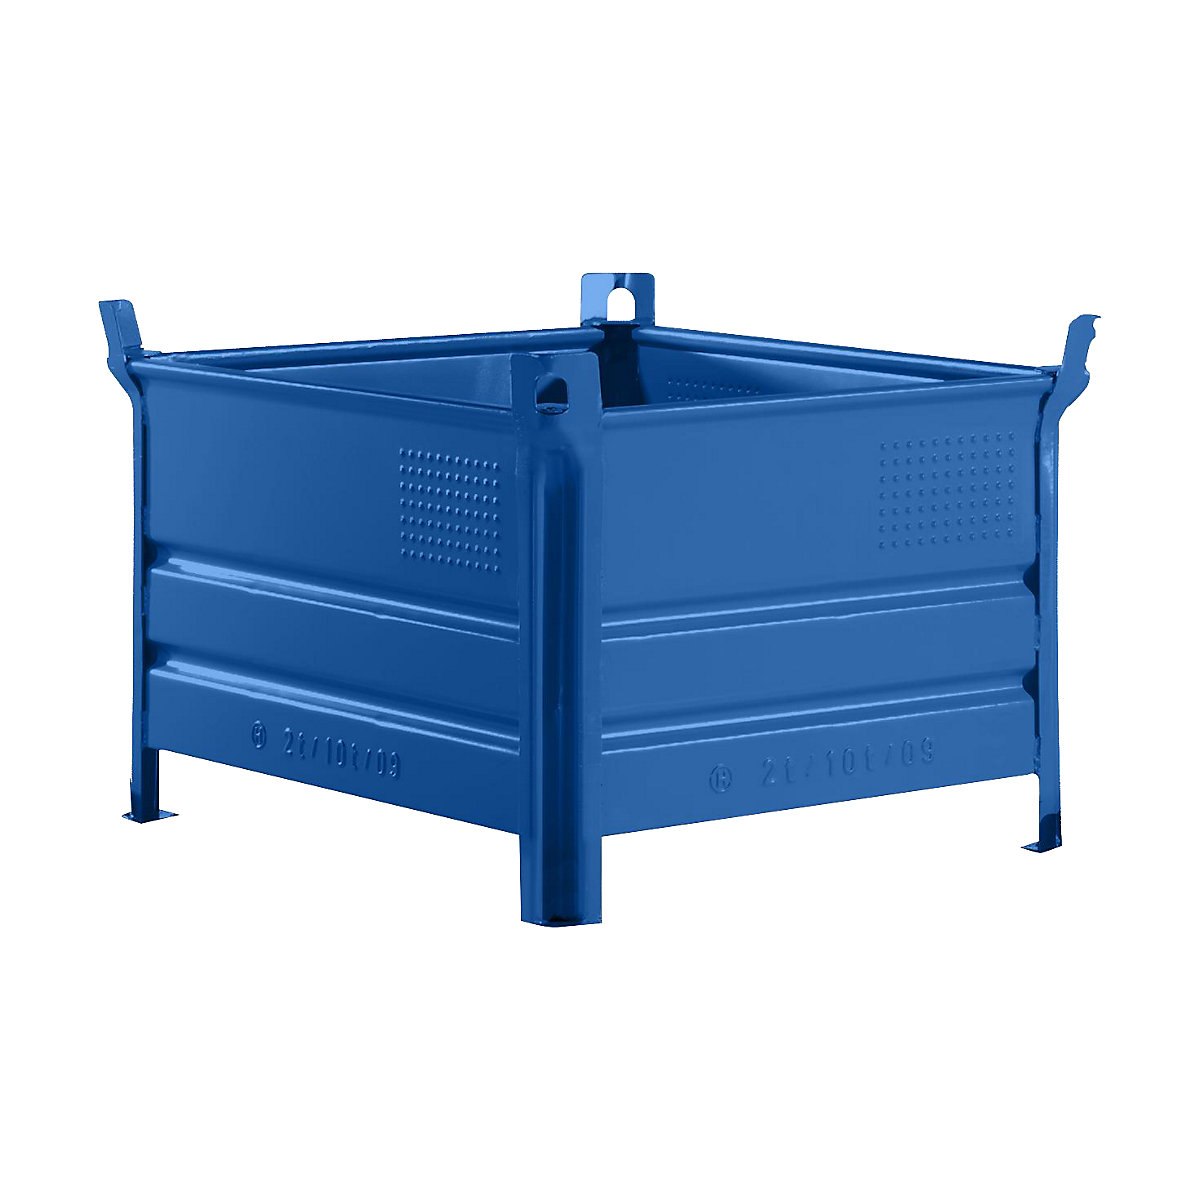 Pojemnik do ustawiania w stos z pełnymi ściankami – Heson, szer. x dł. 800 x 1000 mm, nośność 1000 kg, niebieski, od 5 szt.-8